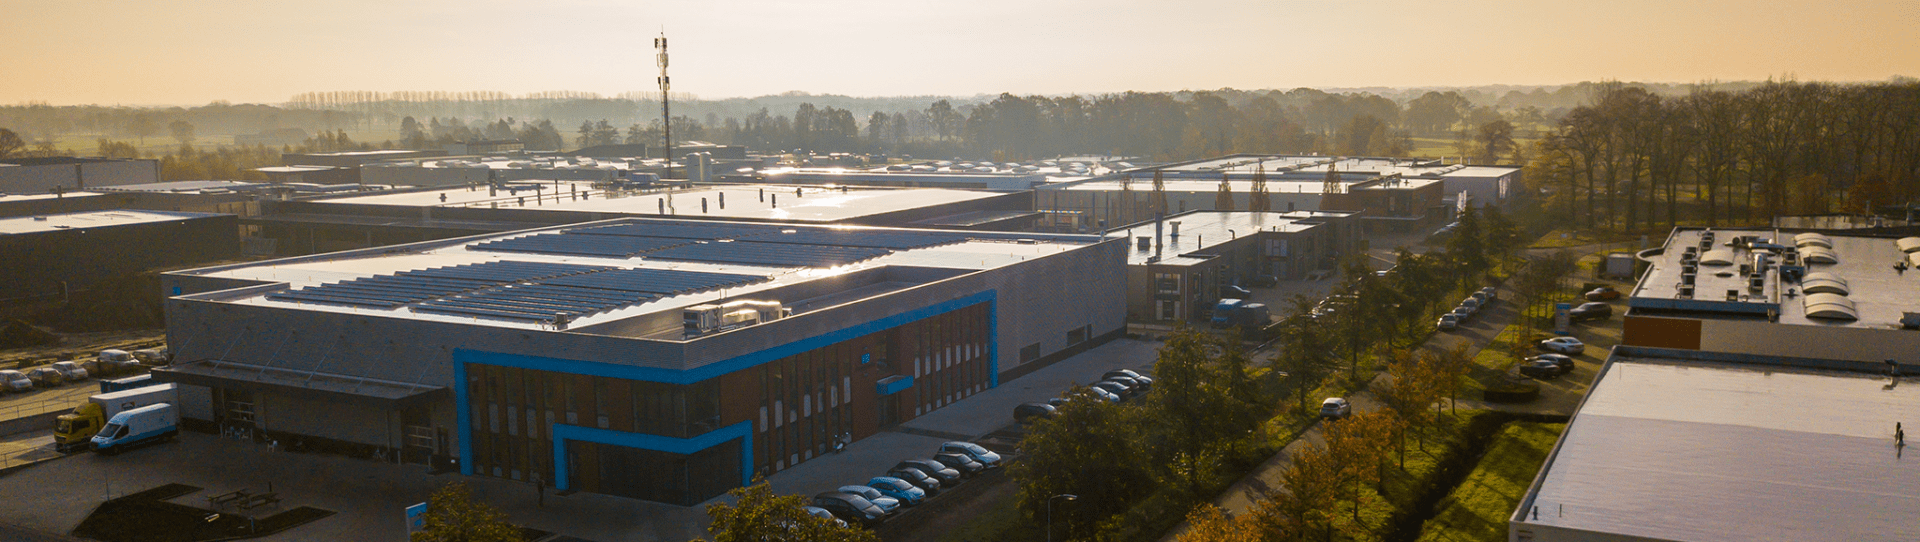 Image drone : bâtiments commerciaux de Varsseveld